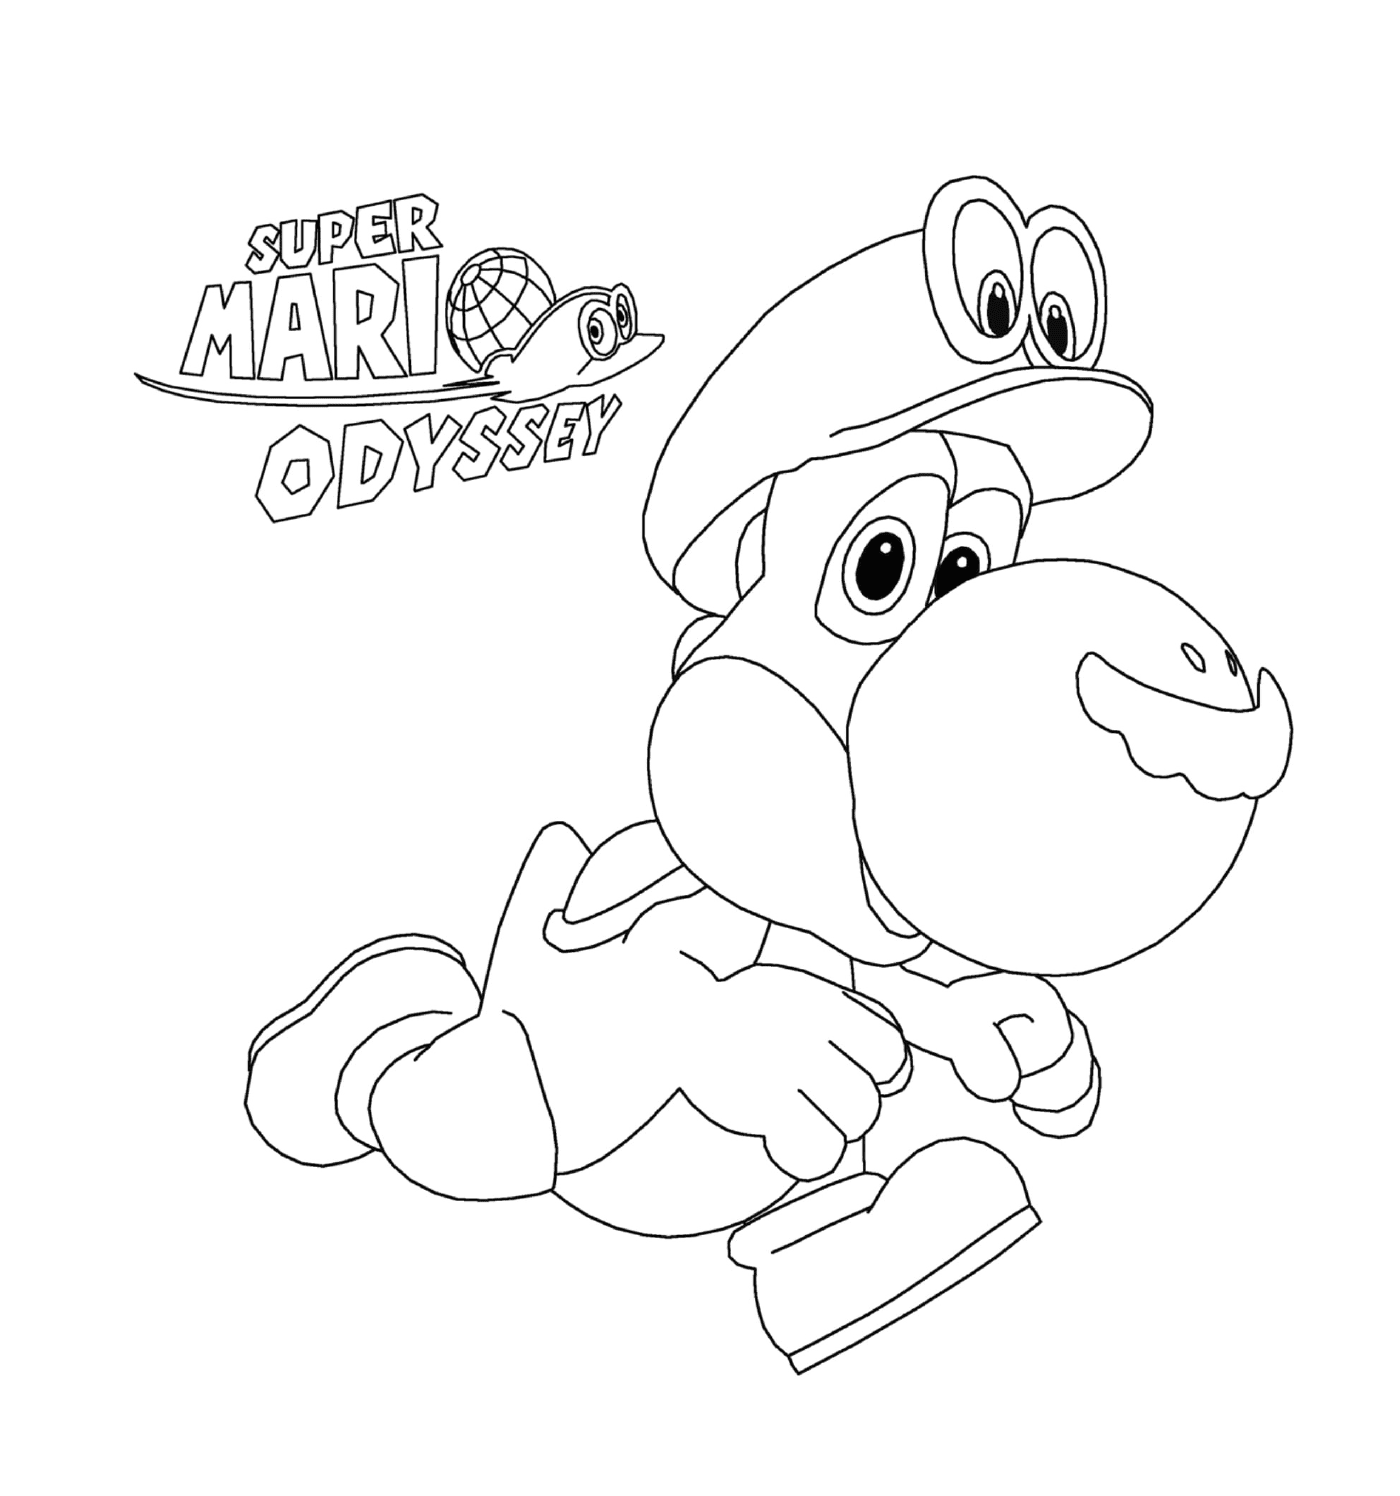  Super Mario Odyssey mit Yoshi von Nintendo 